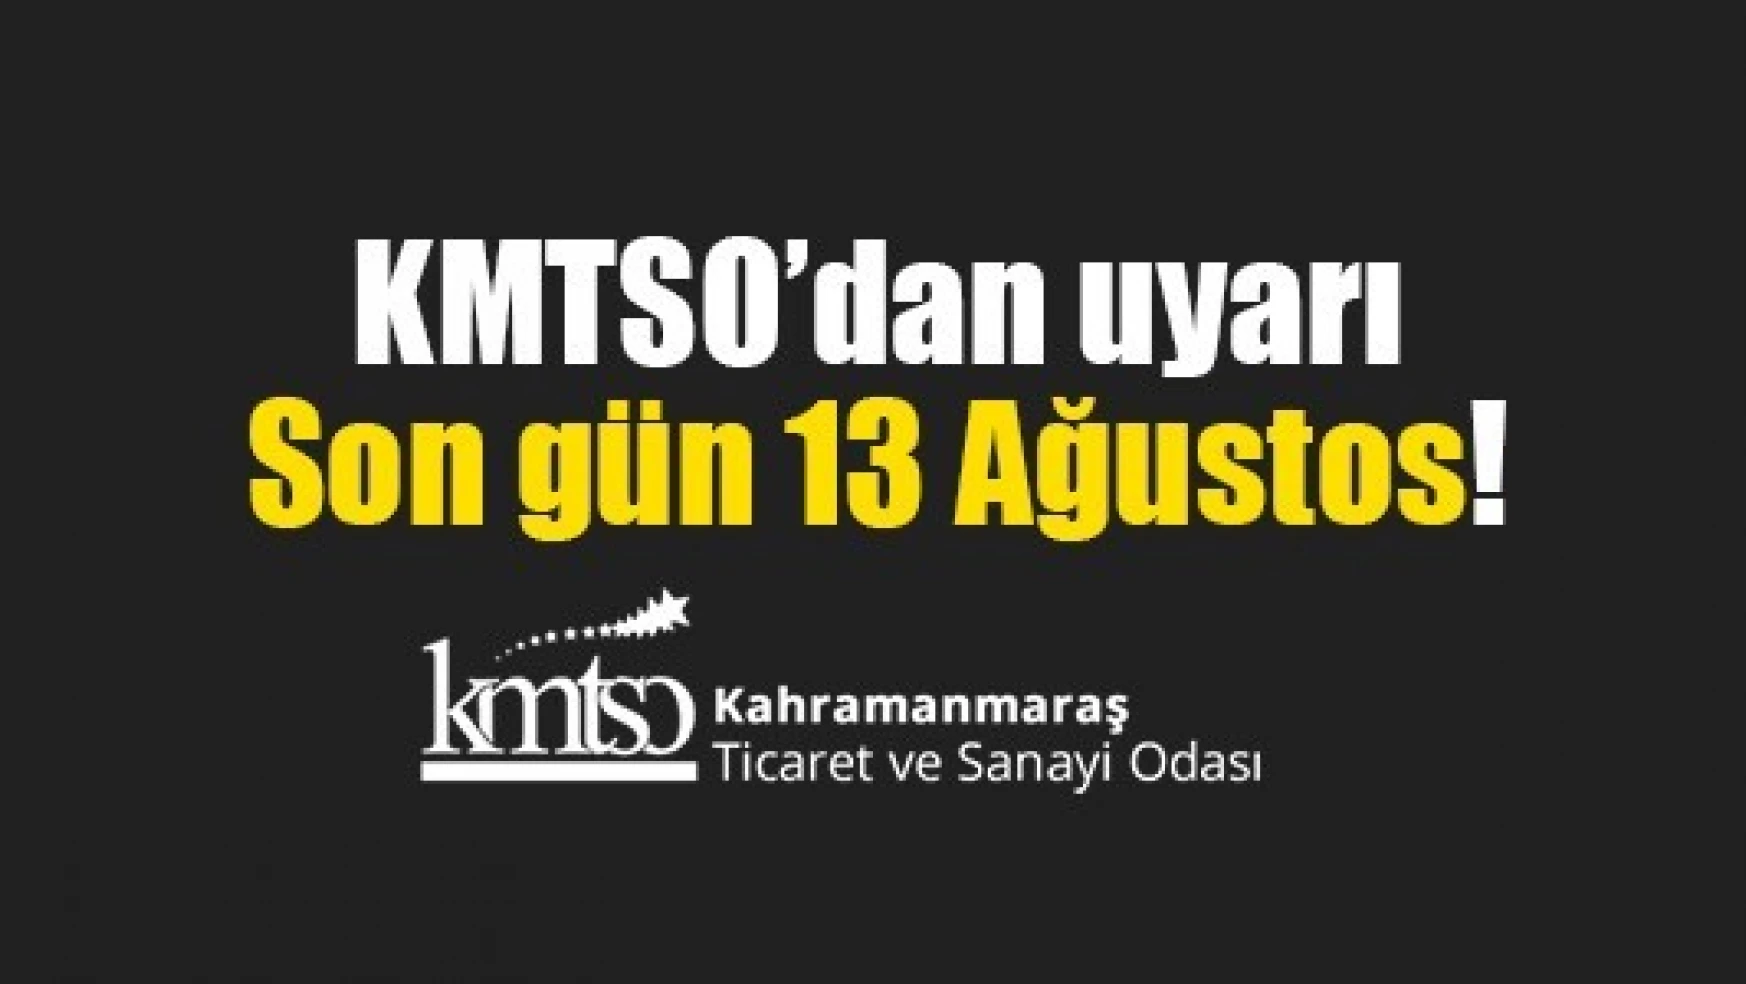 KMTSO'dan uyarı: Son gün 13 Ağustos!